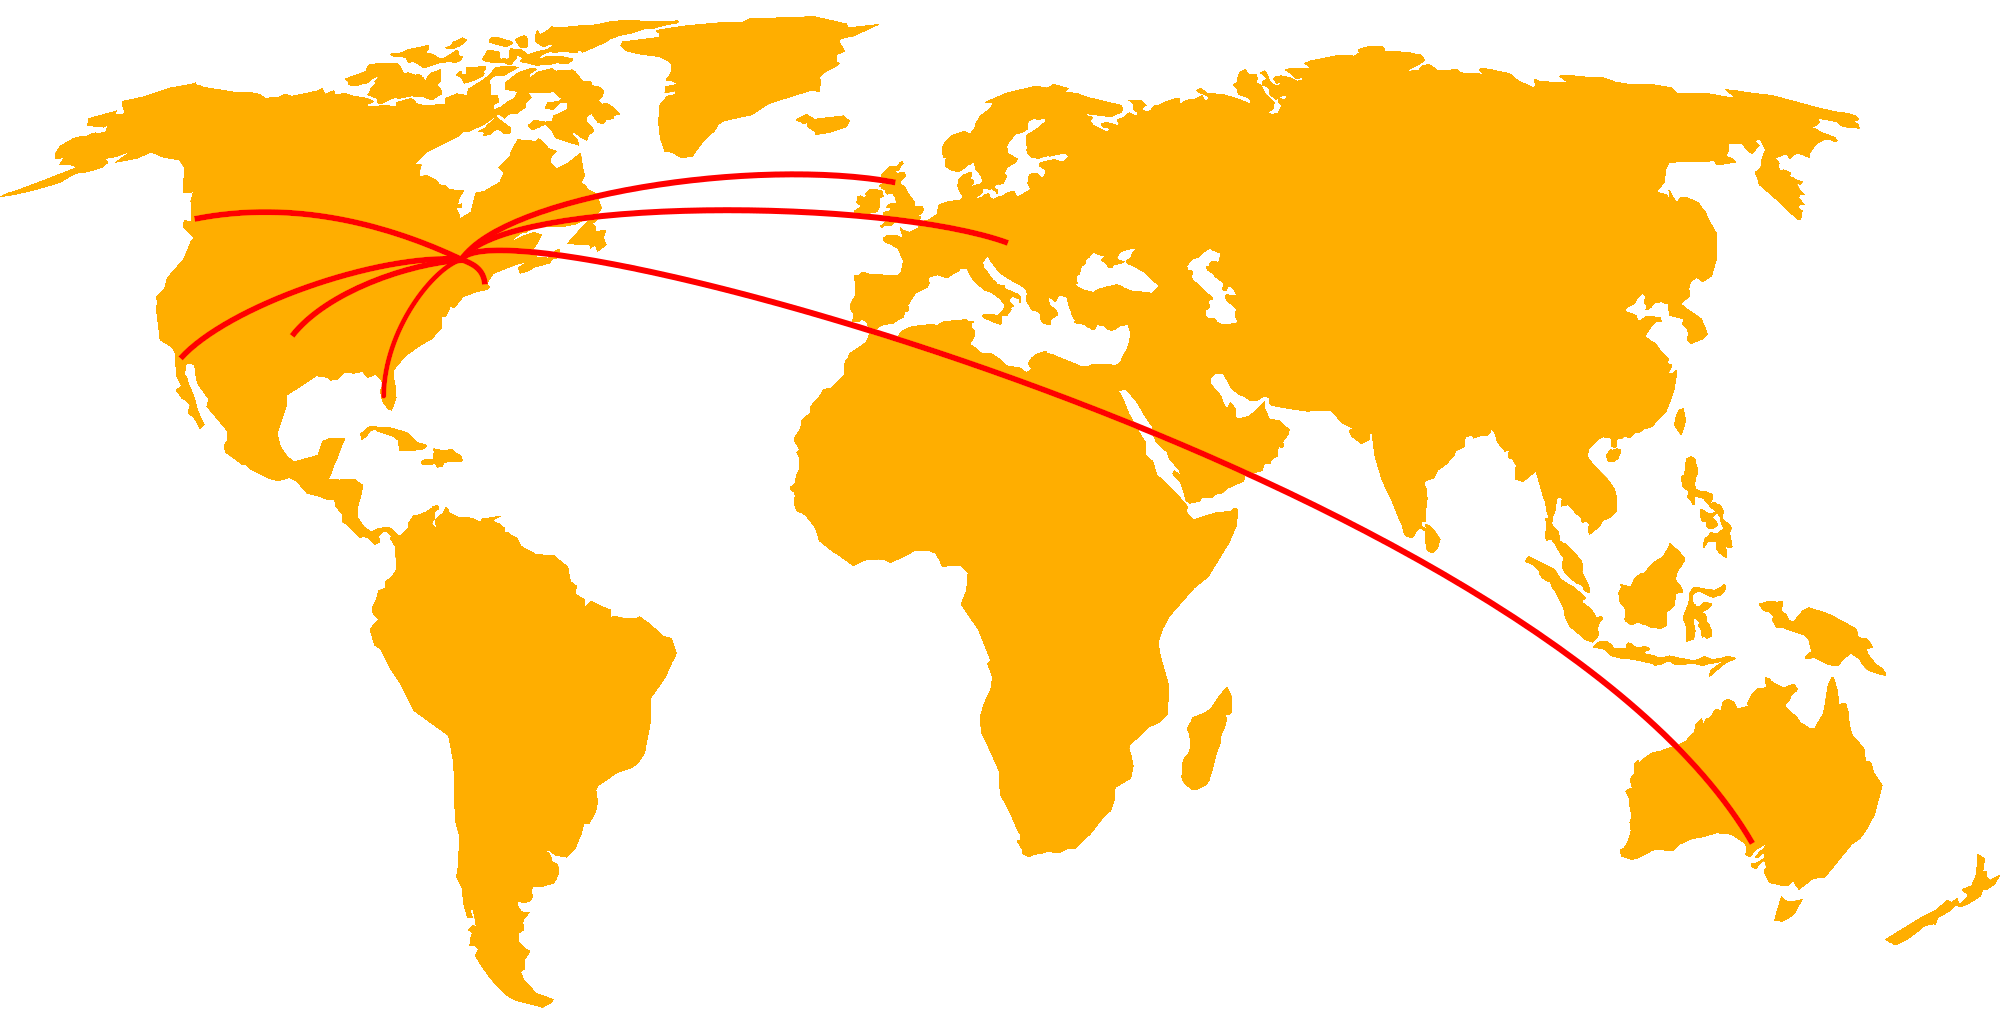 client map - Texas, California, British Columbia, Scotland, Austria, Australia